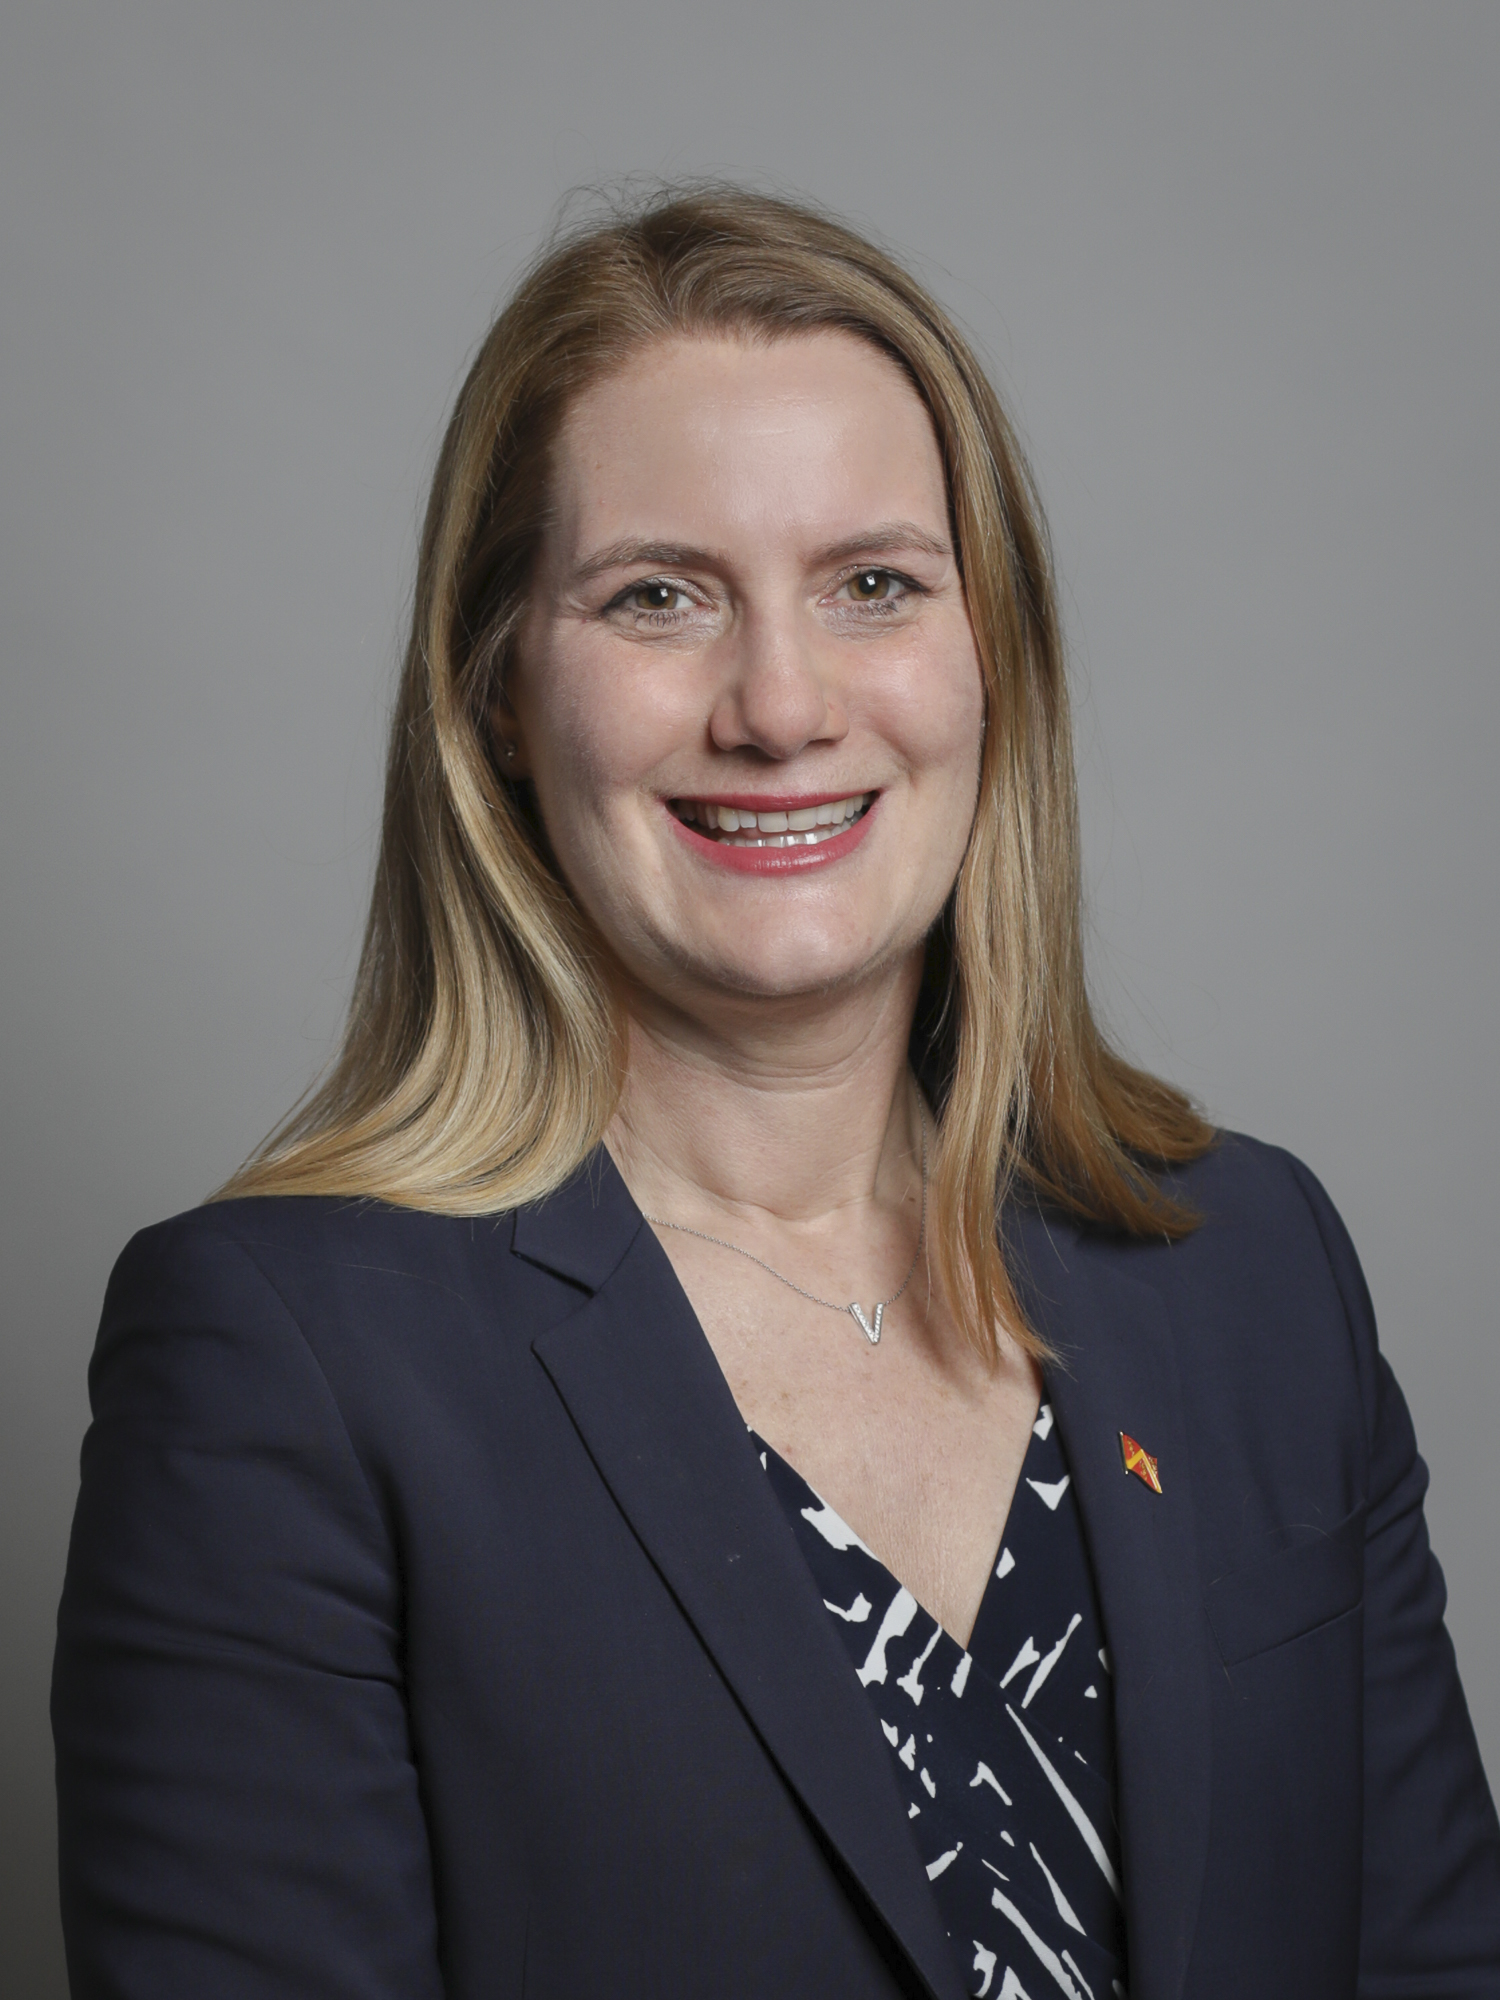 Virginia Crosbie MP, Secretary